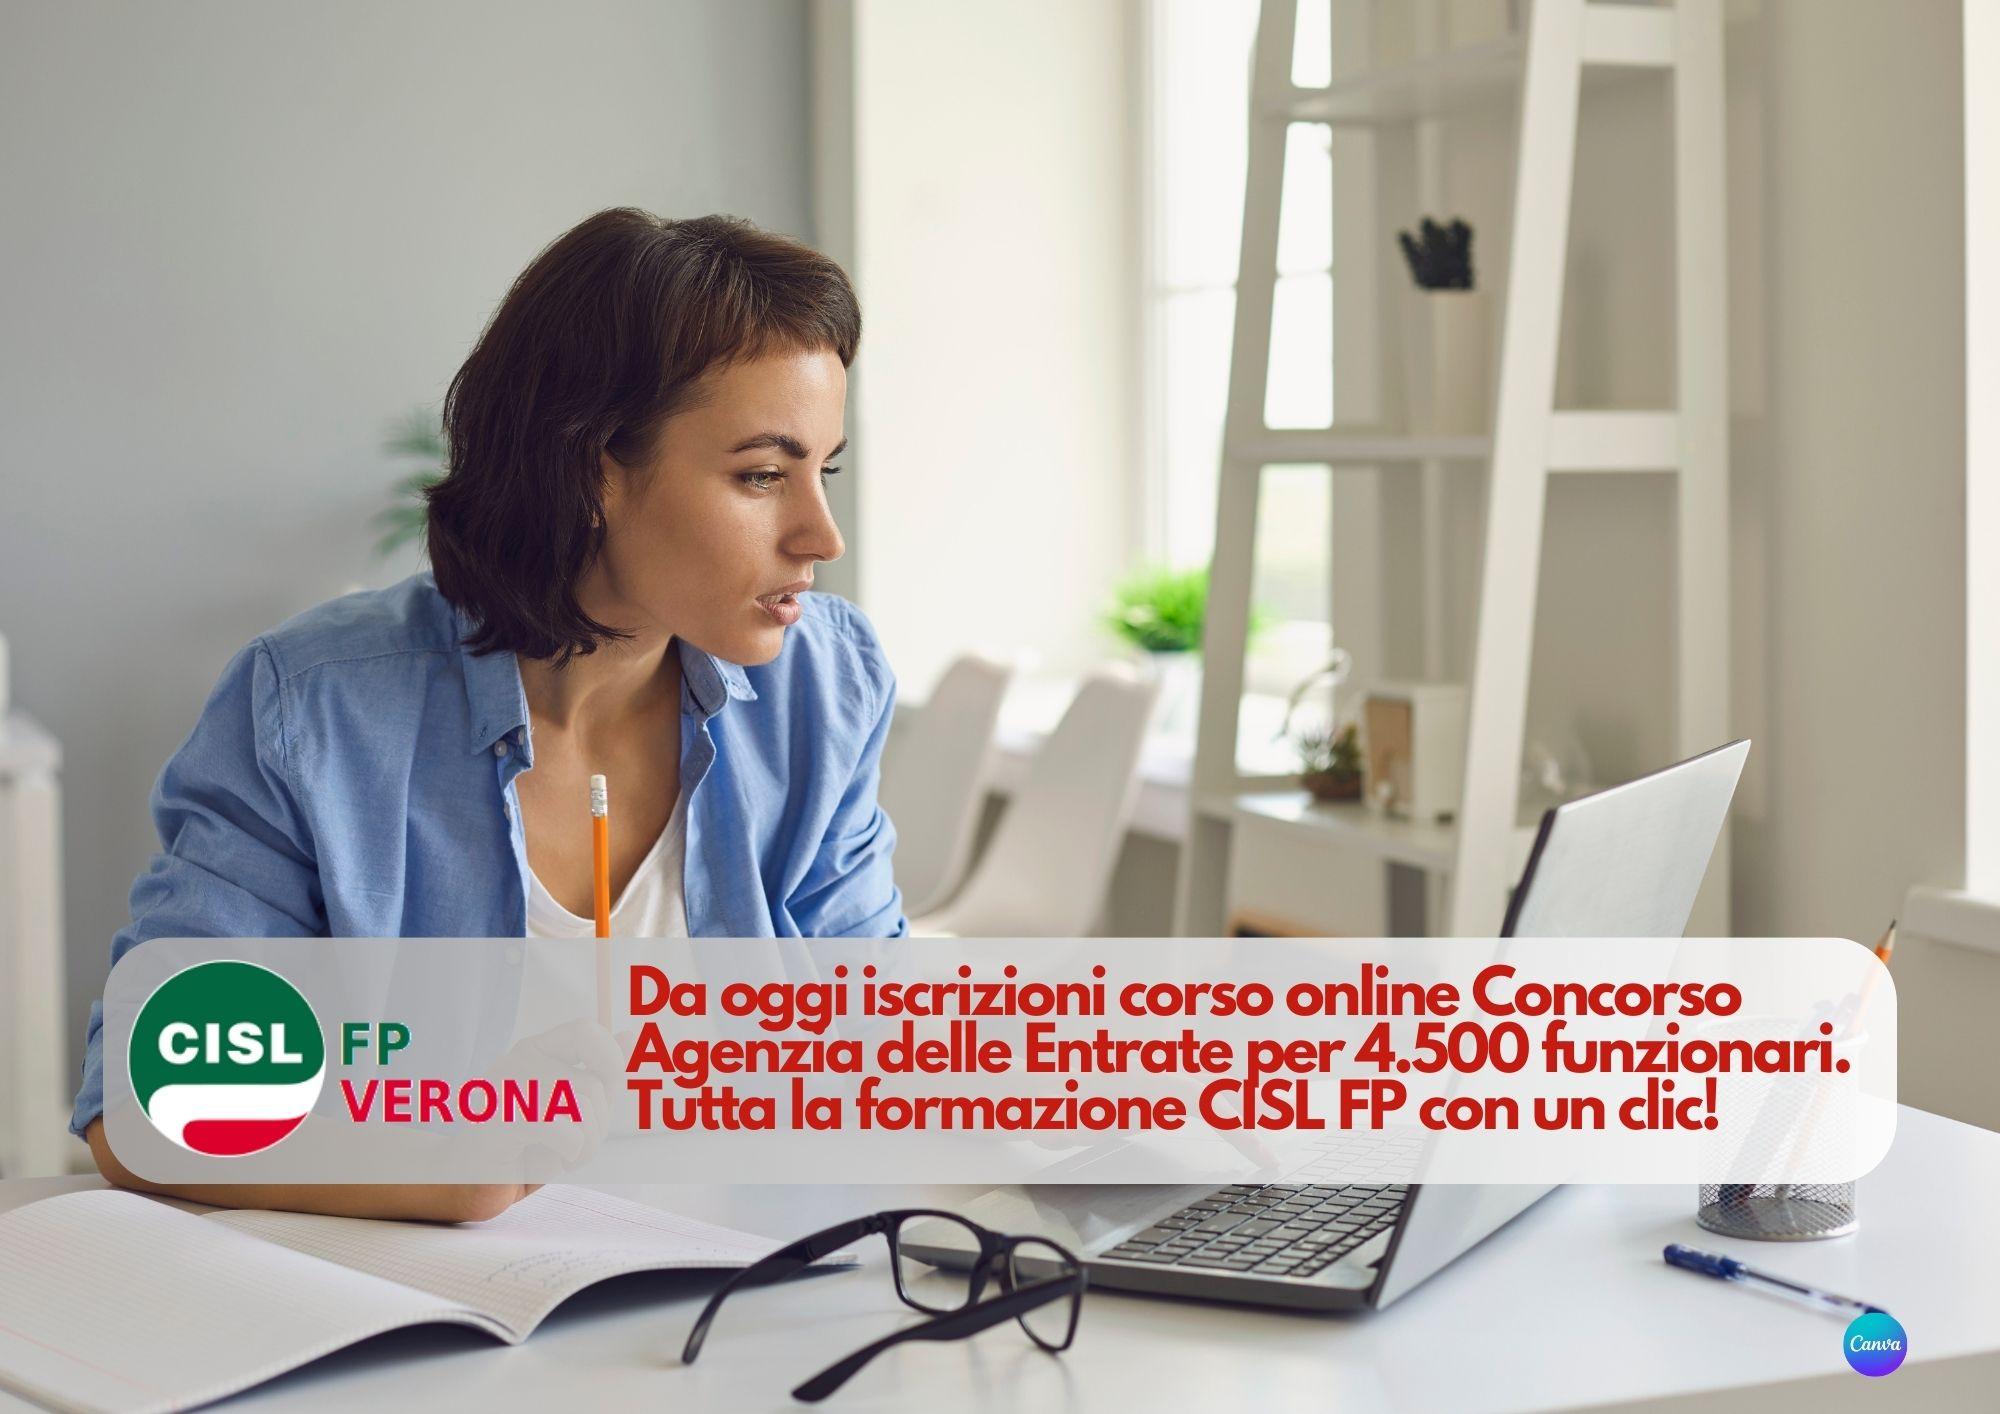 CISL FP Verona. Da oggi iscrizioni corso online Concorso Agenzia delle Entrate. Tutta la formazione CISL FP